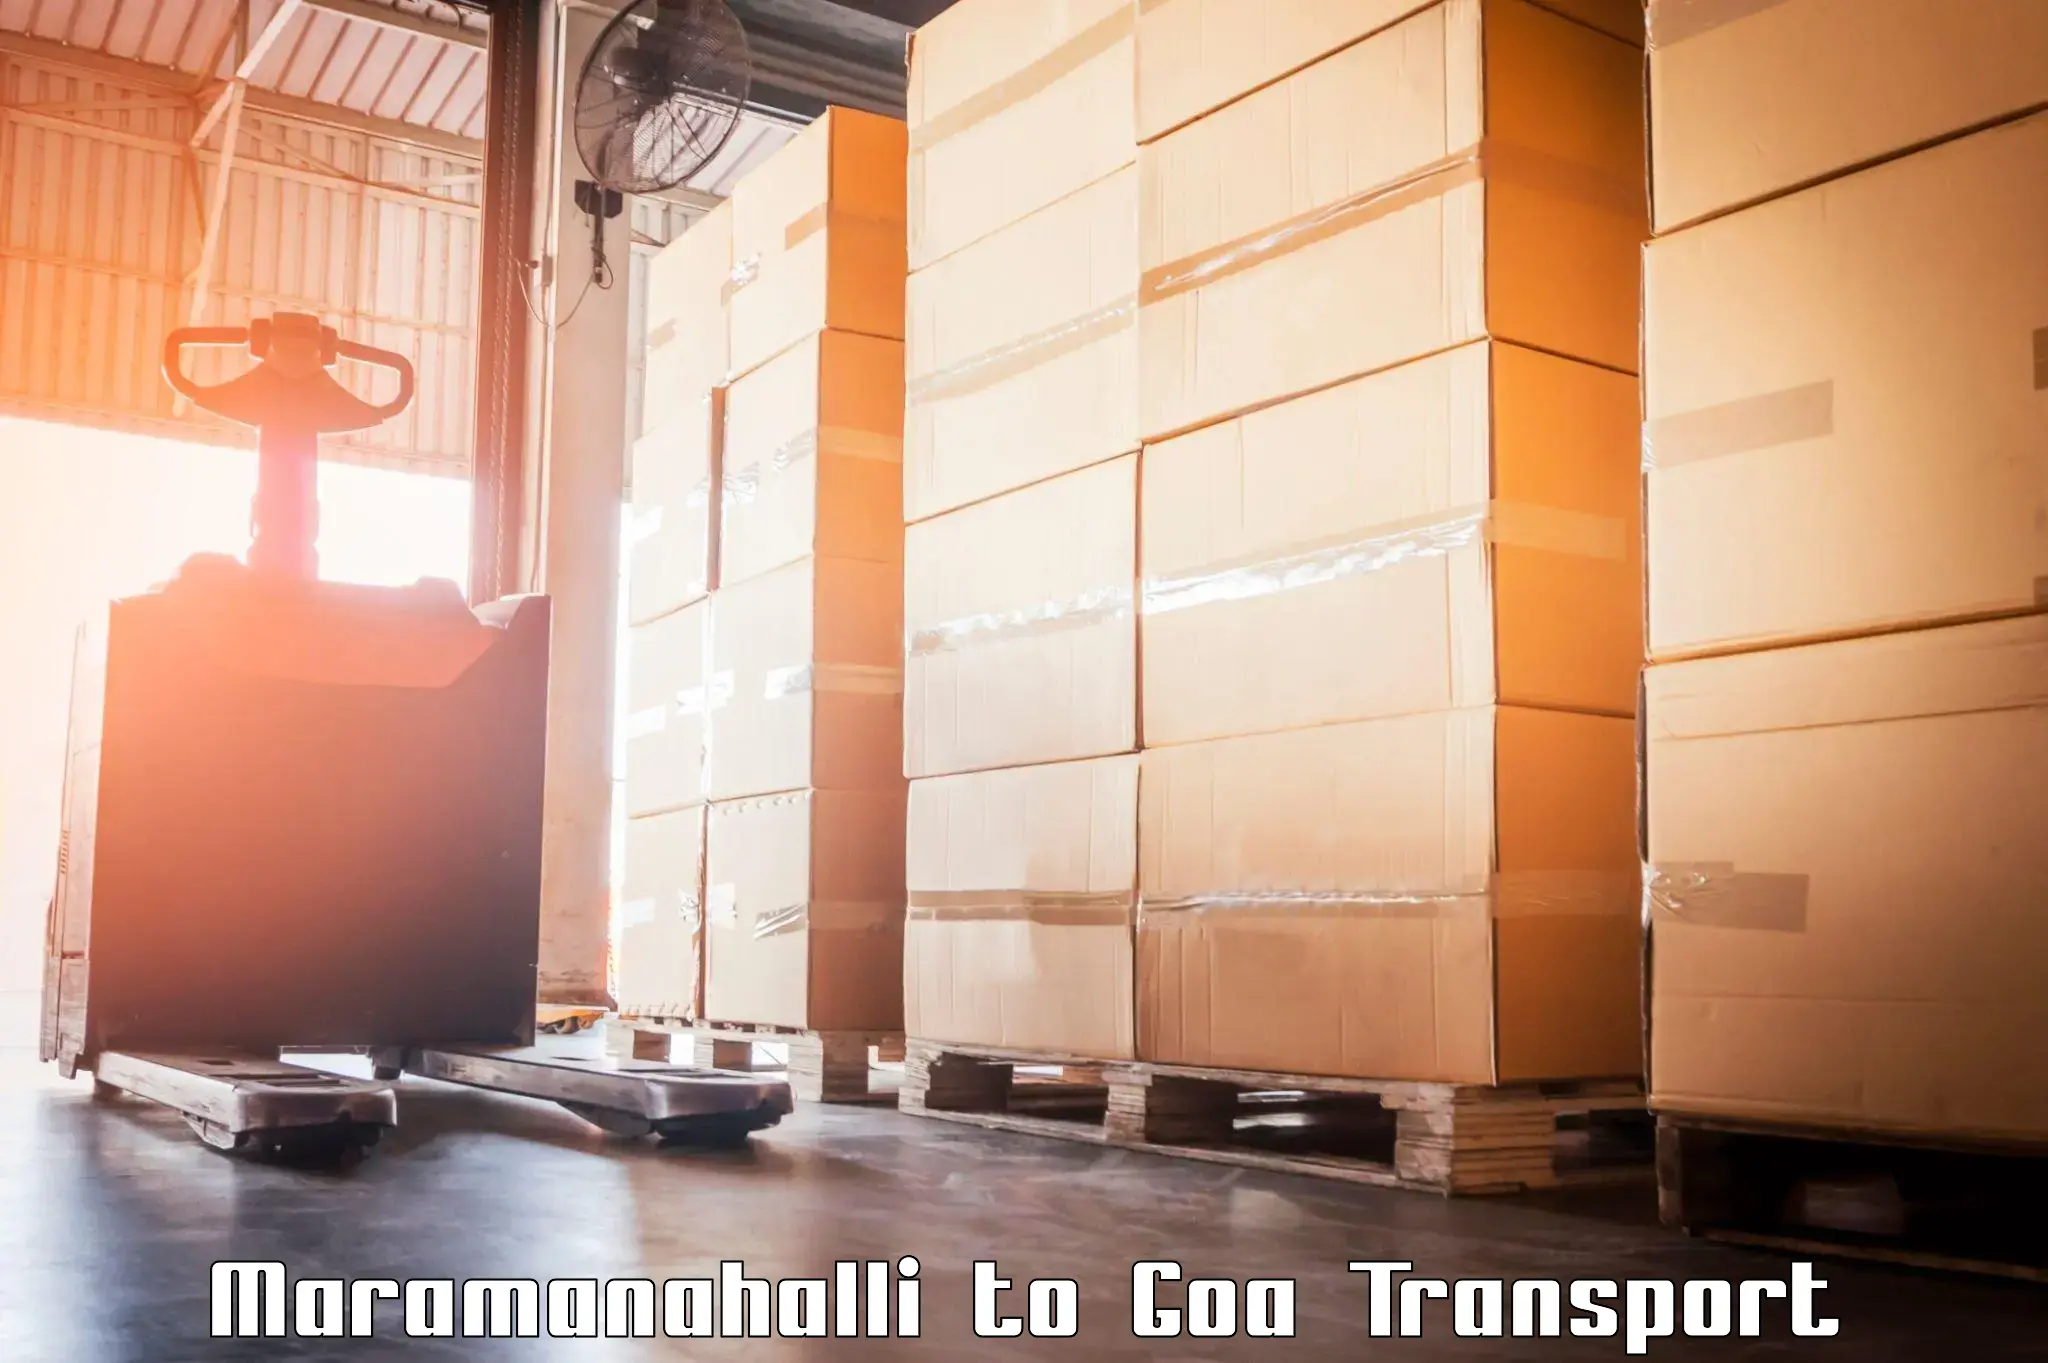 Commercial transport service Maramanahalli to Canacona